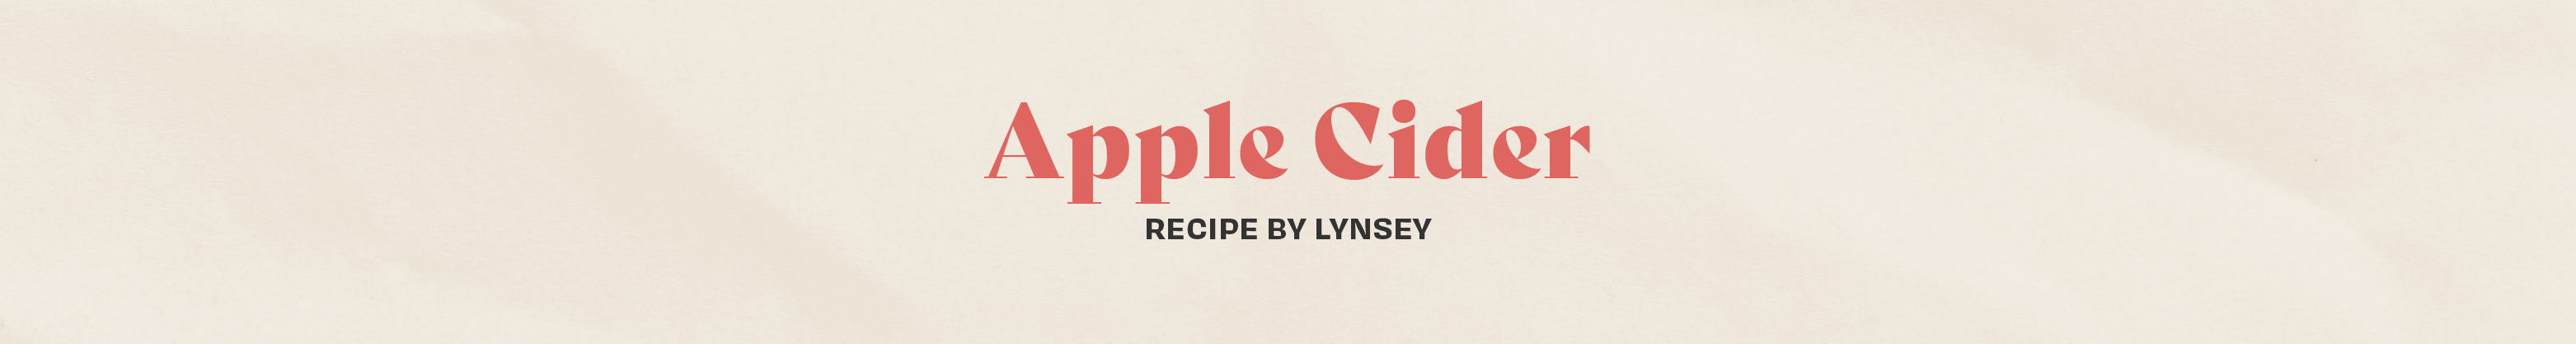 Lynsey - Apple Cider